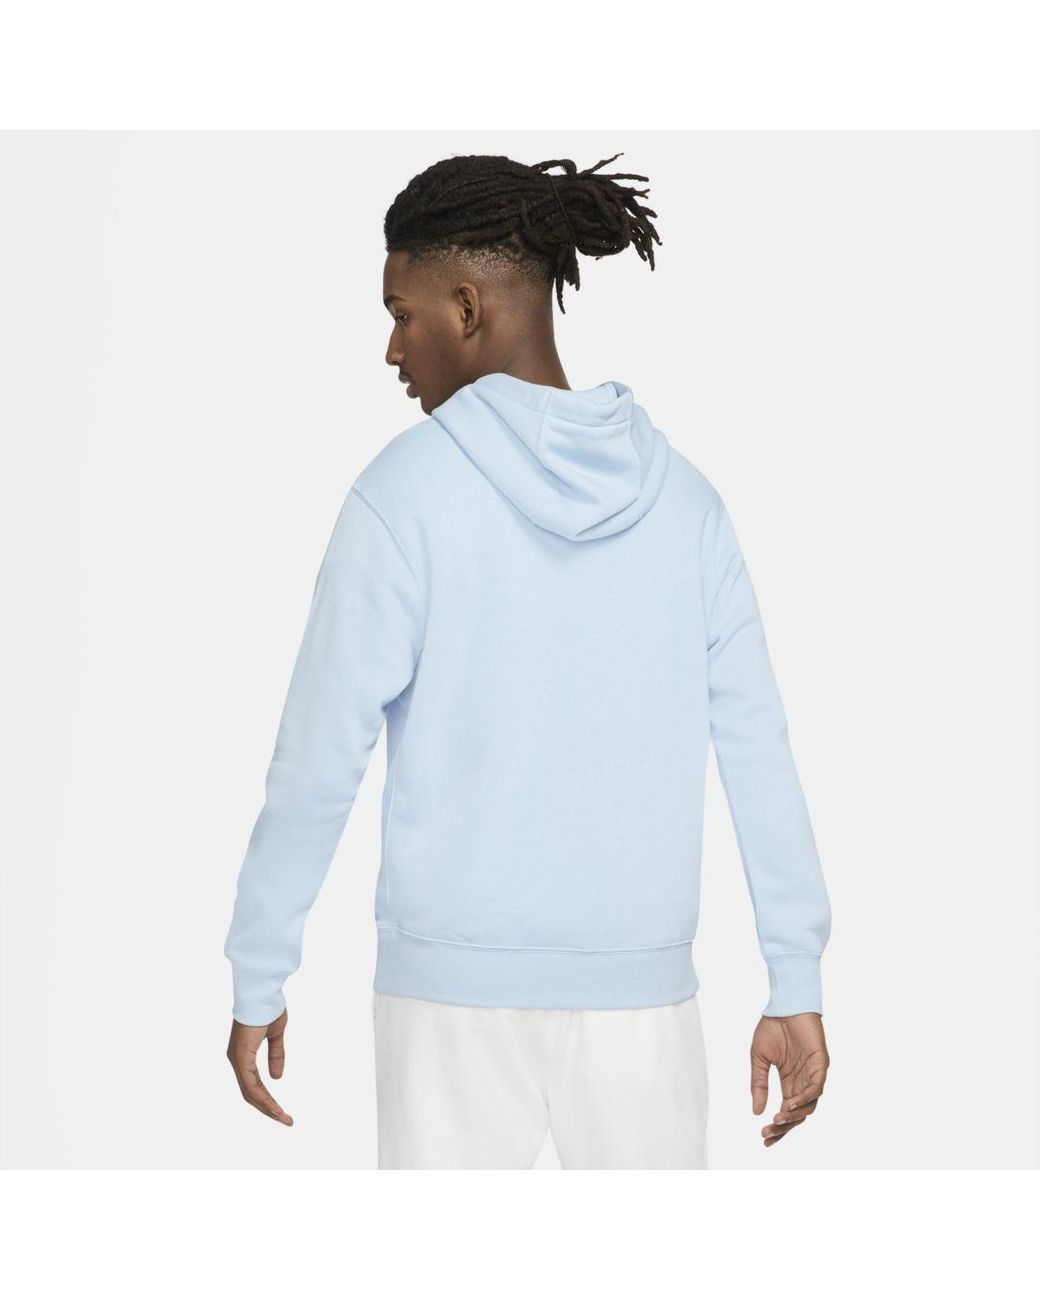 Nike Sportswear Club Fleece Pullover Hoodie in Blue for Men